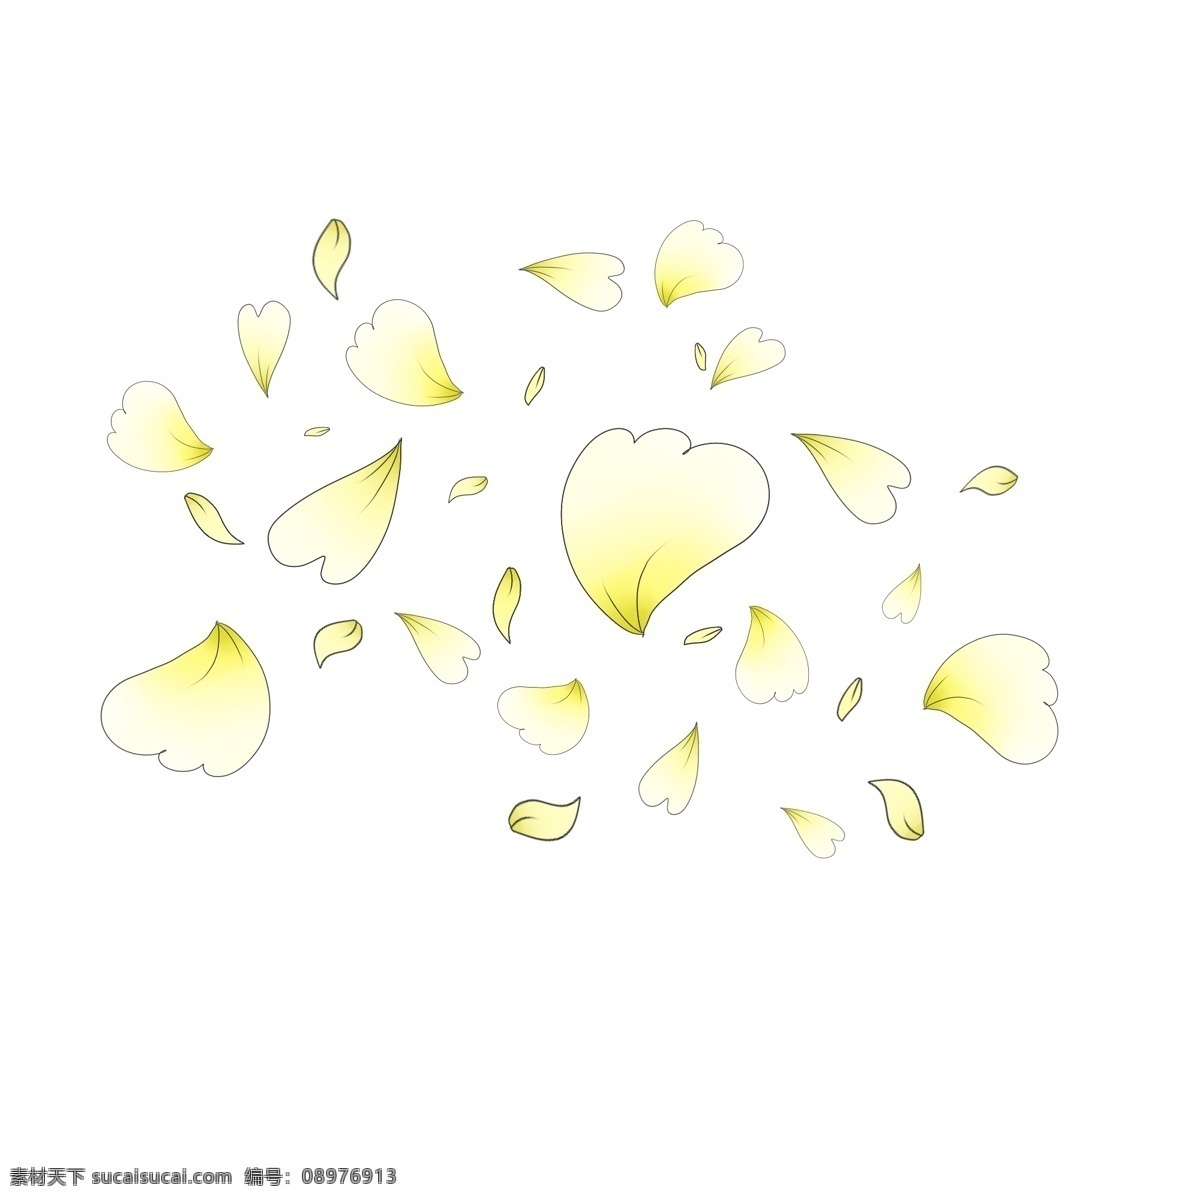 手绘 心形 花瓣 插画 心形的花瓣 卡通的插画 手绘插画 花叶 花朵 红色的花瓣 飘落的花瓣